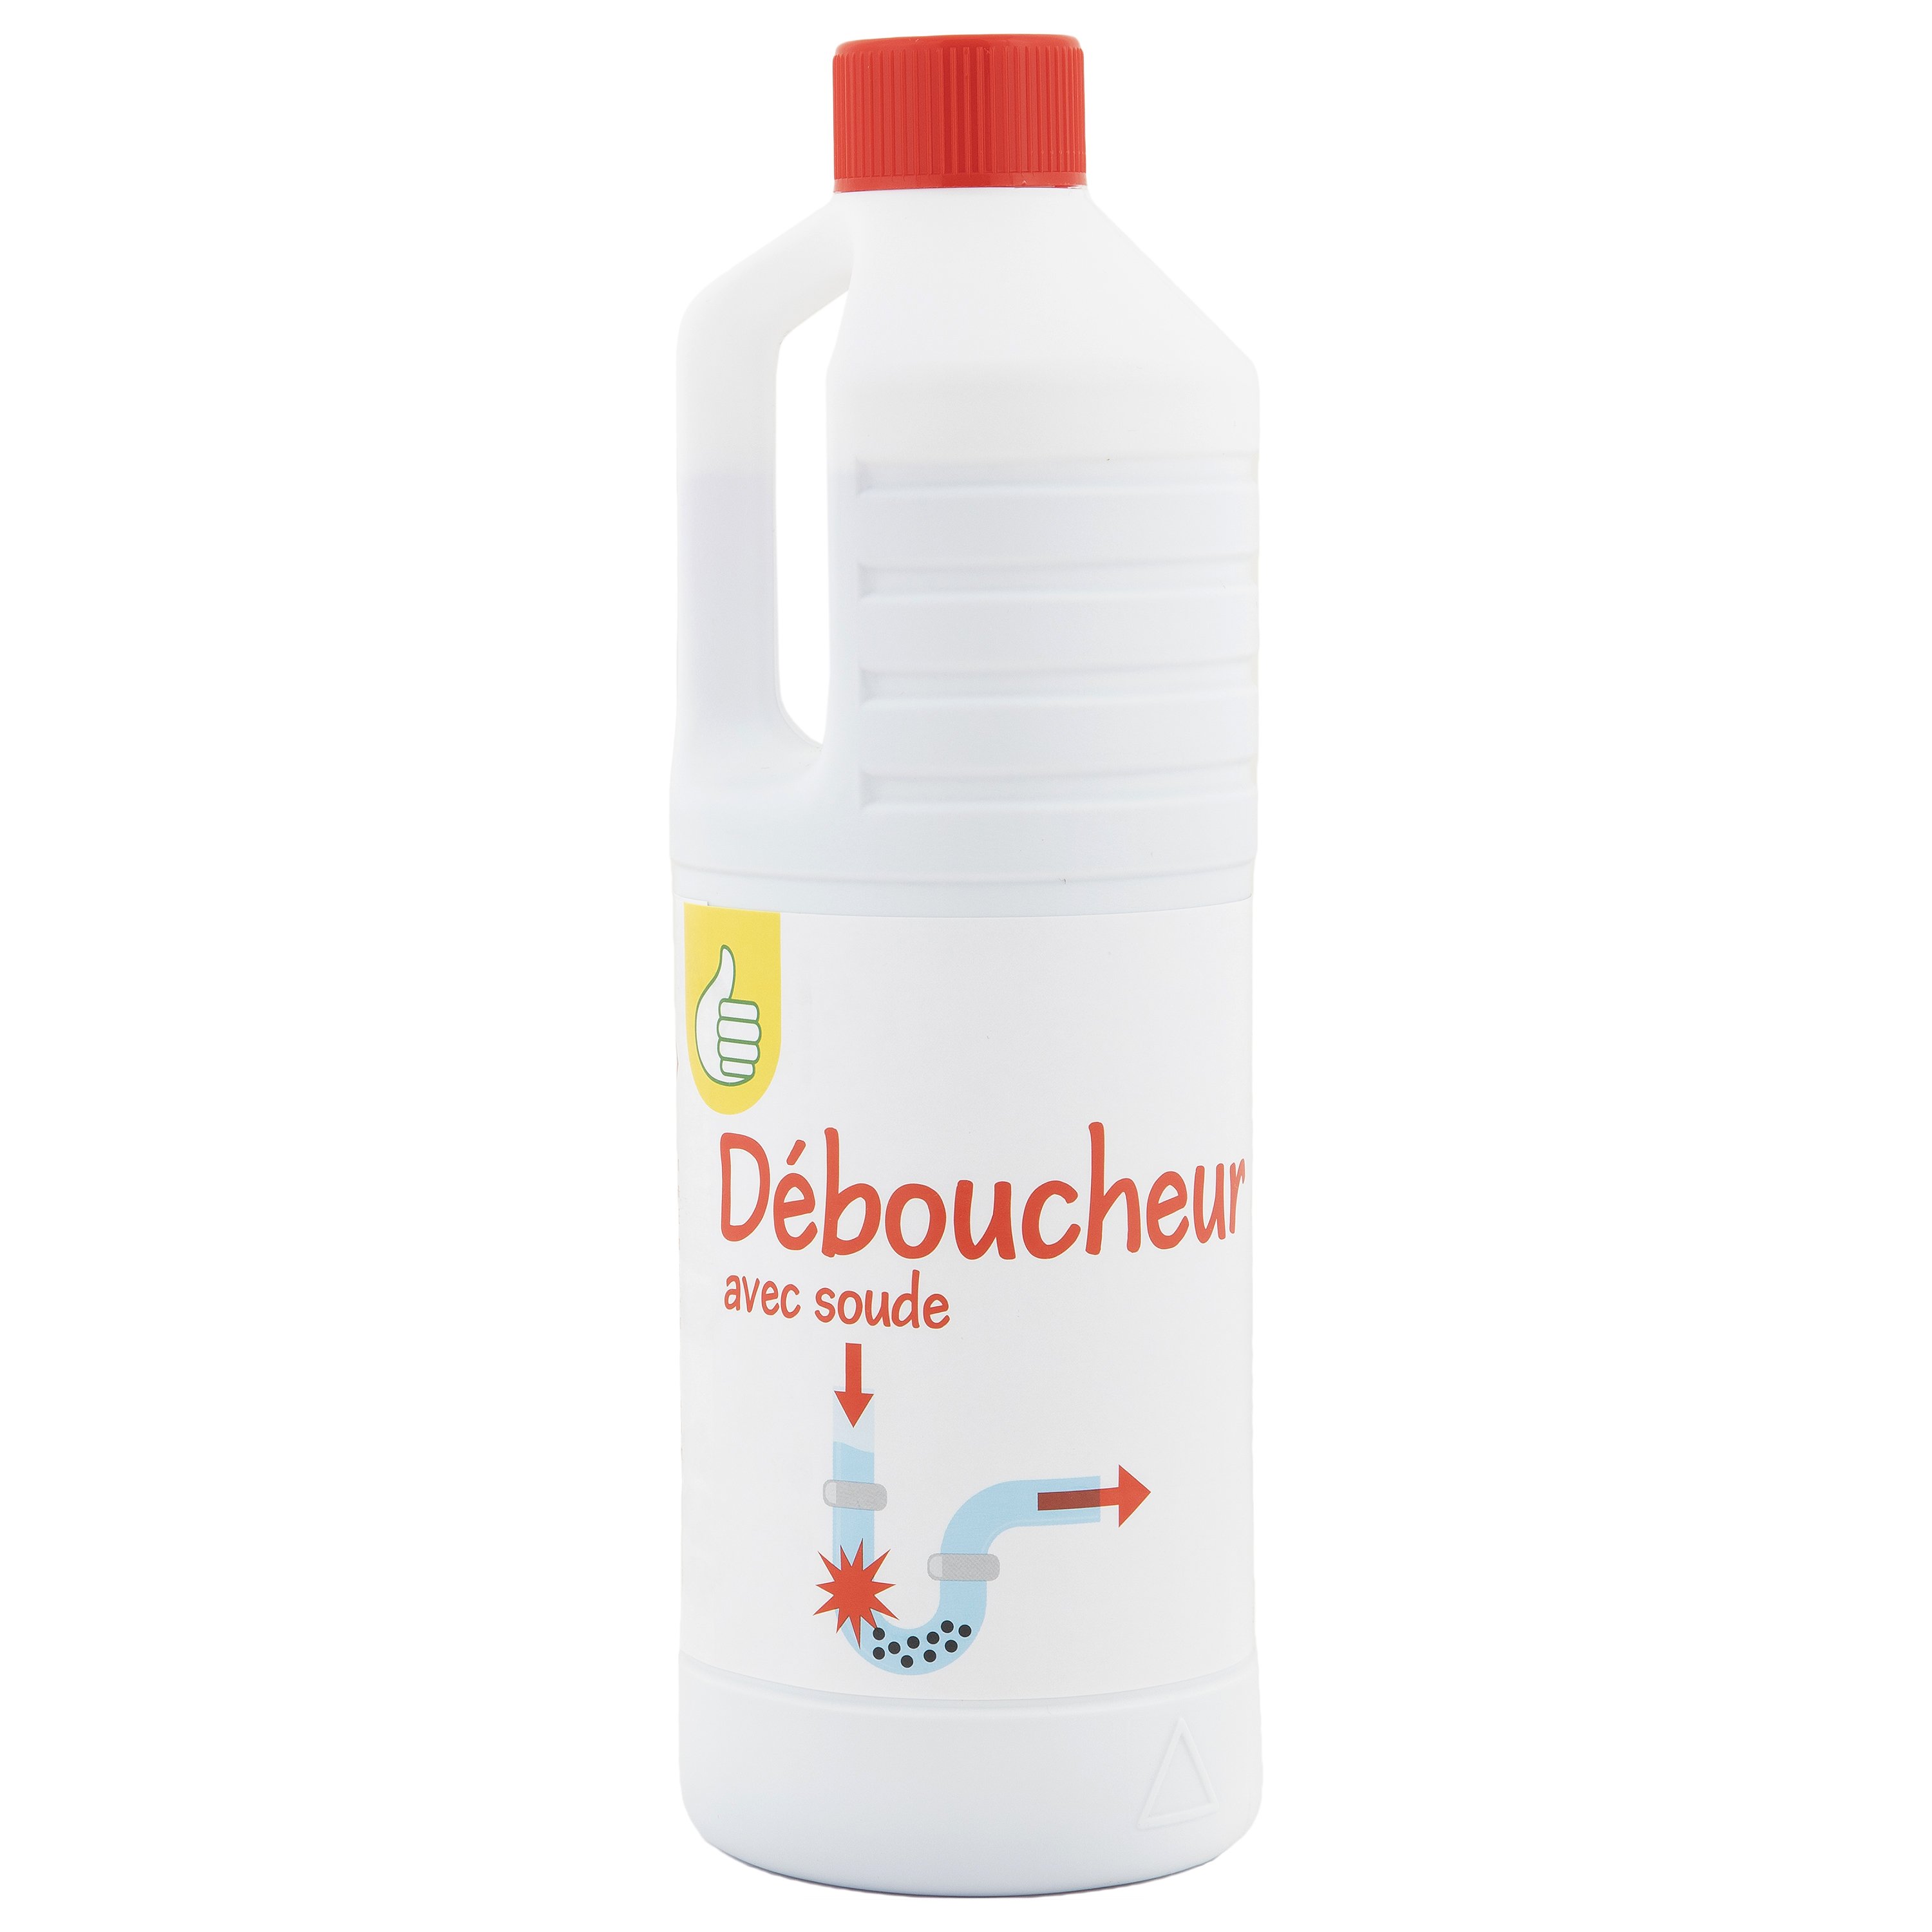 DESTOP - Turbo - Rouge - Gel Déboucheur 5 minutes - flacon de 500 ml